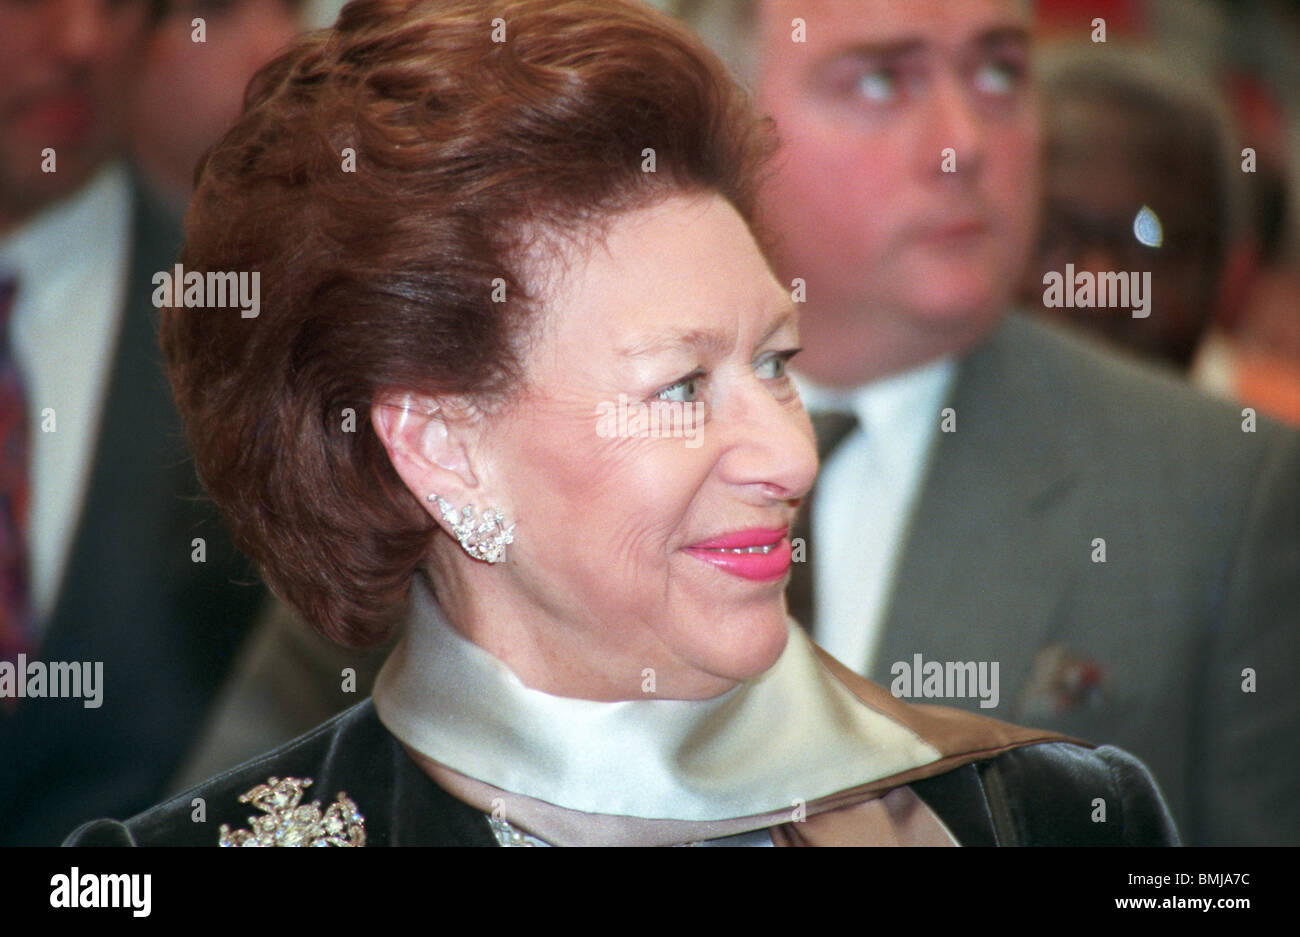 La princesse Margaret en 1996 Charityfair Design Center London N1 Angleterre Banque D'Images